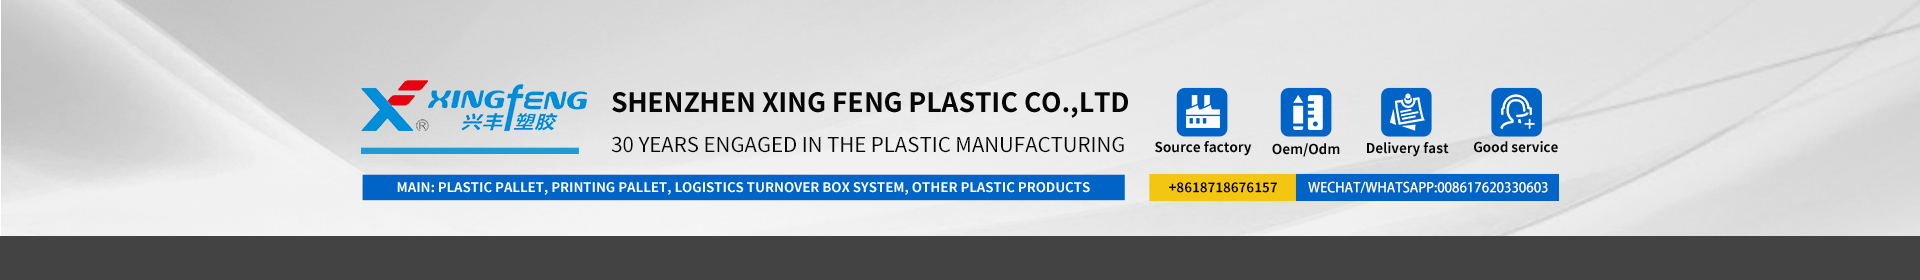 xingfeng plastic company es profesional en productos plásticos desde hace 30 años